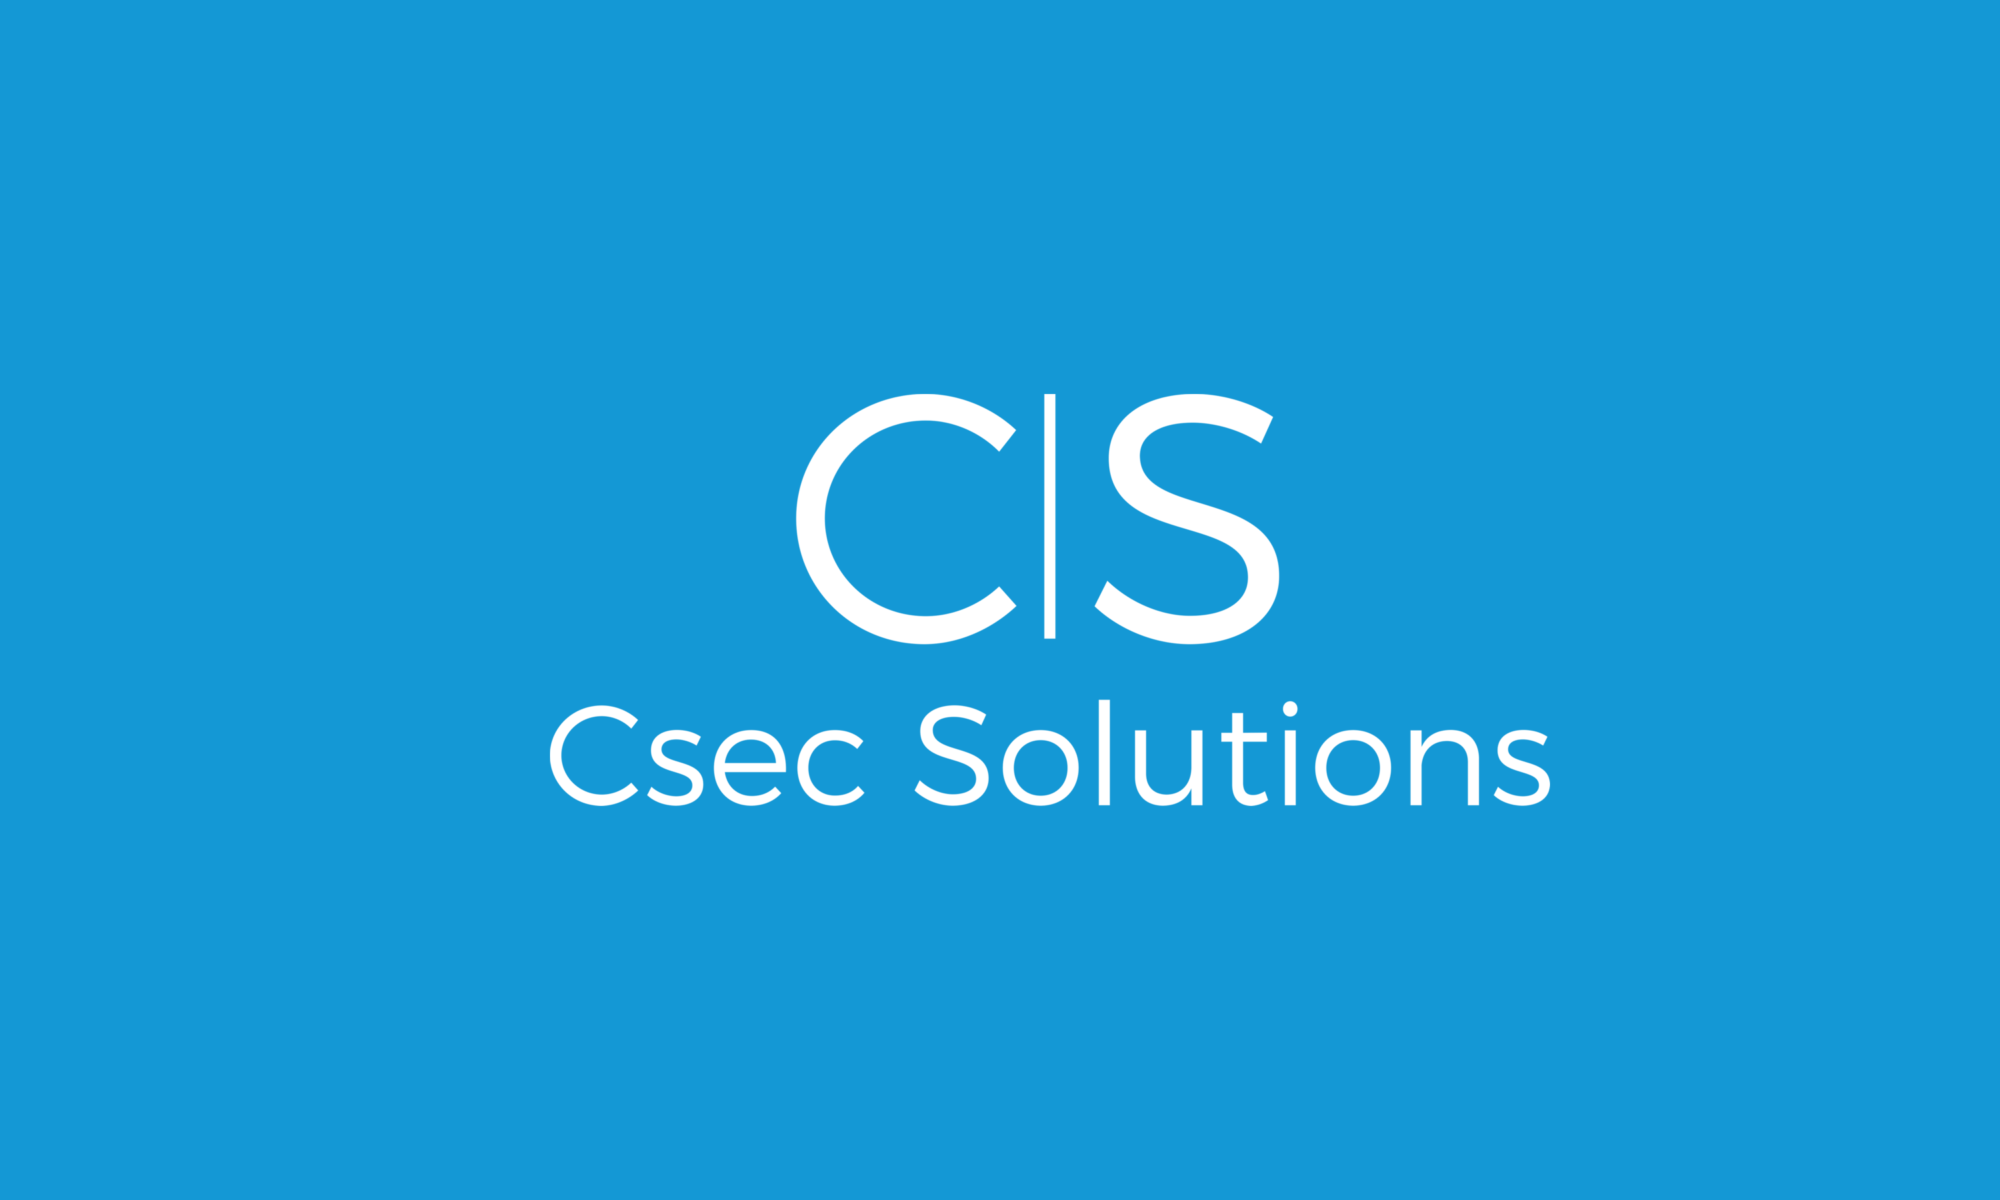 CSEC Solutions